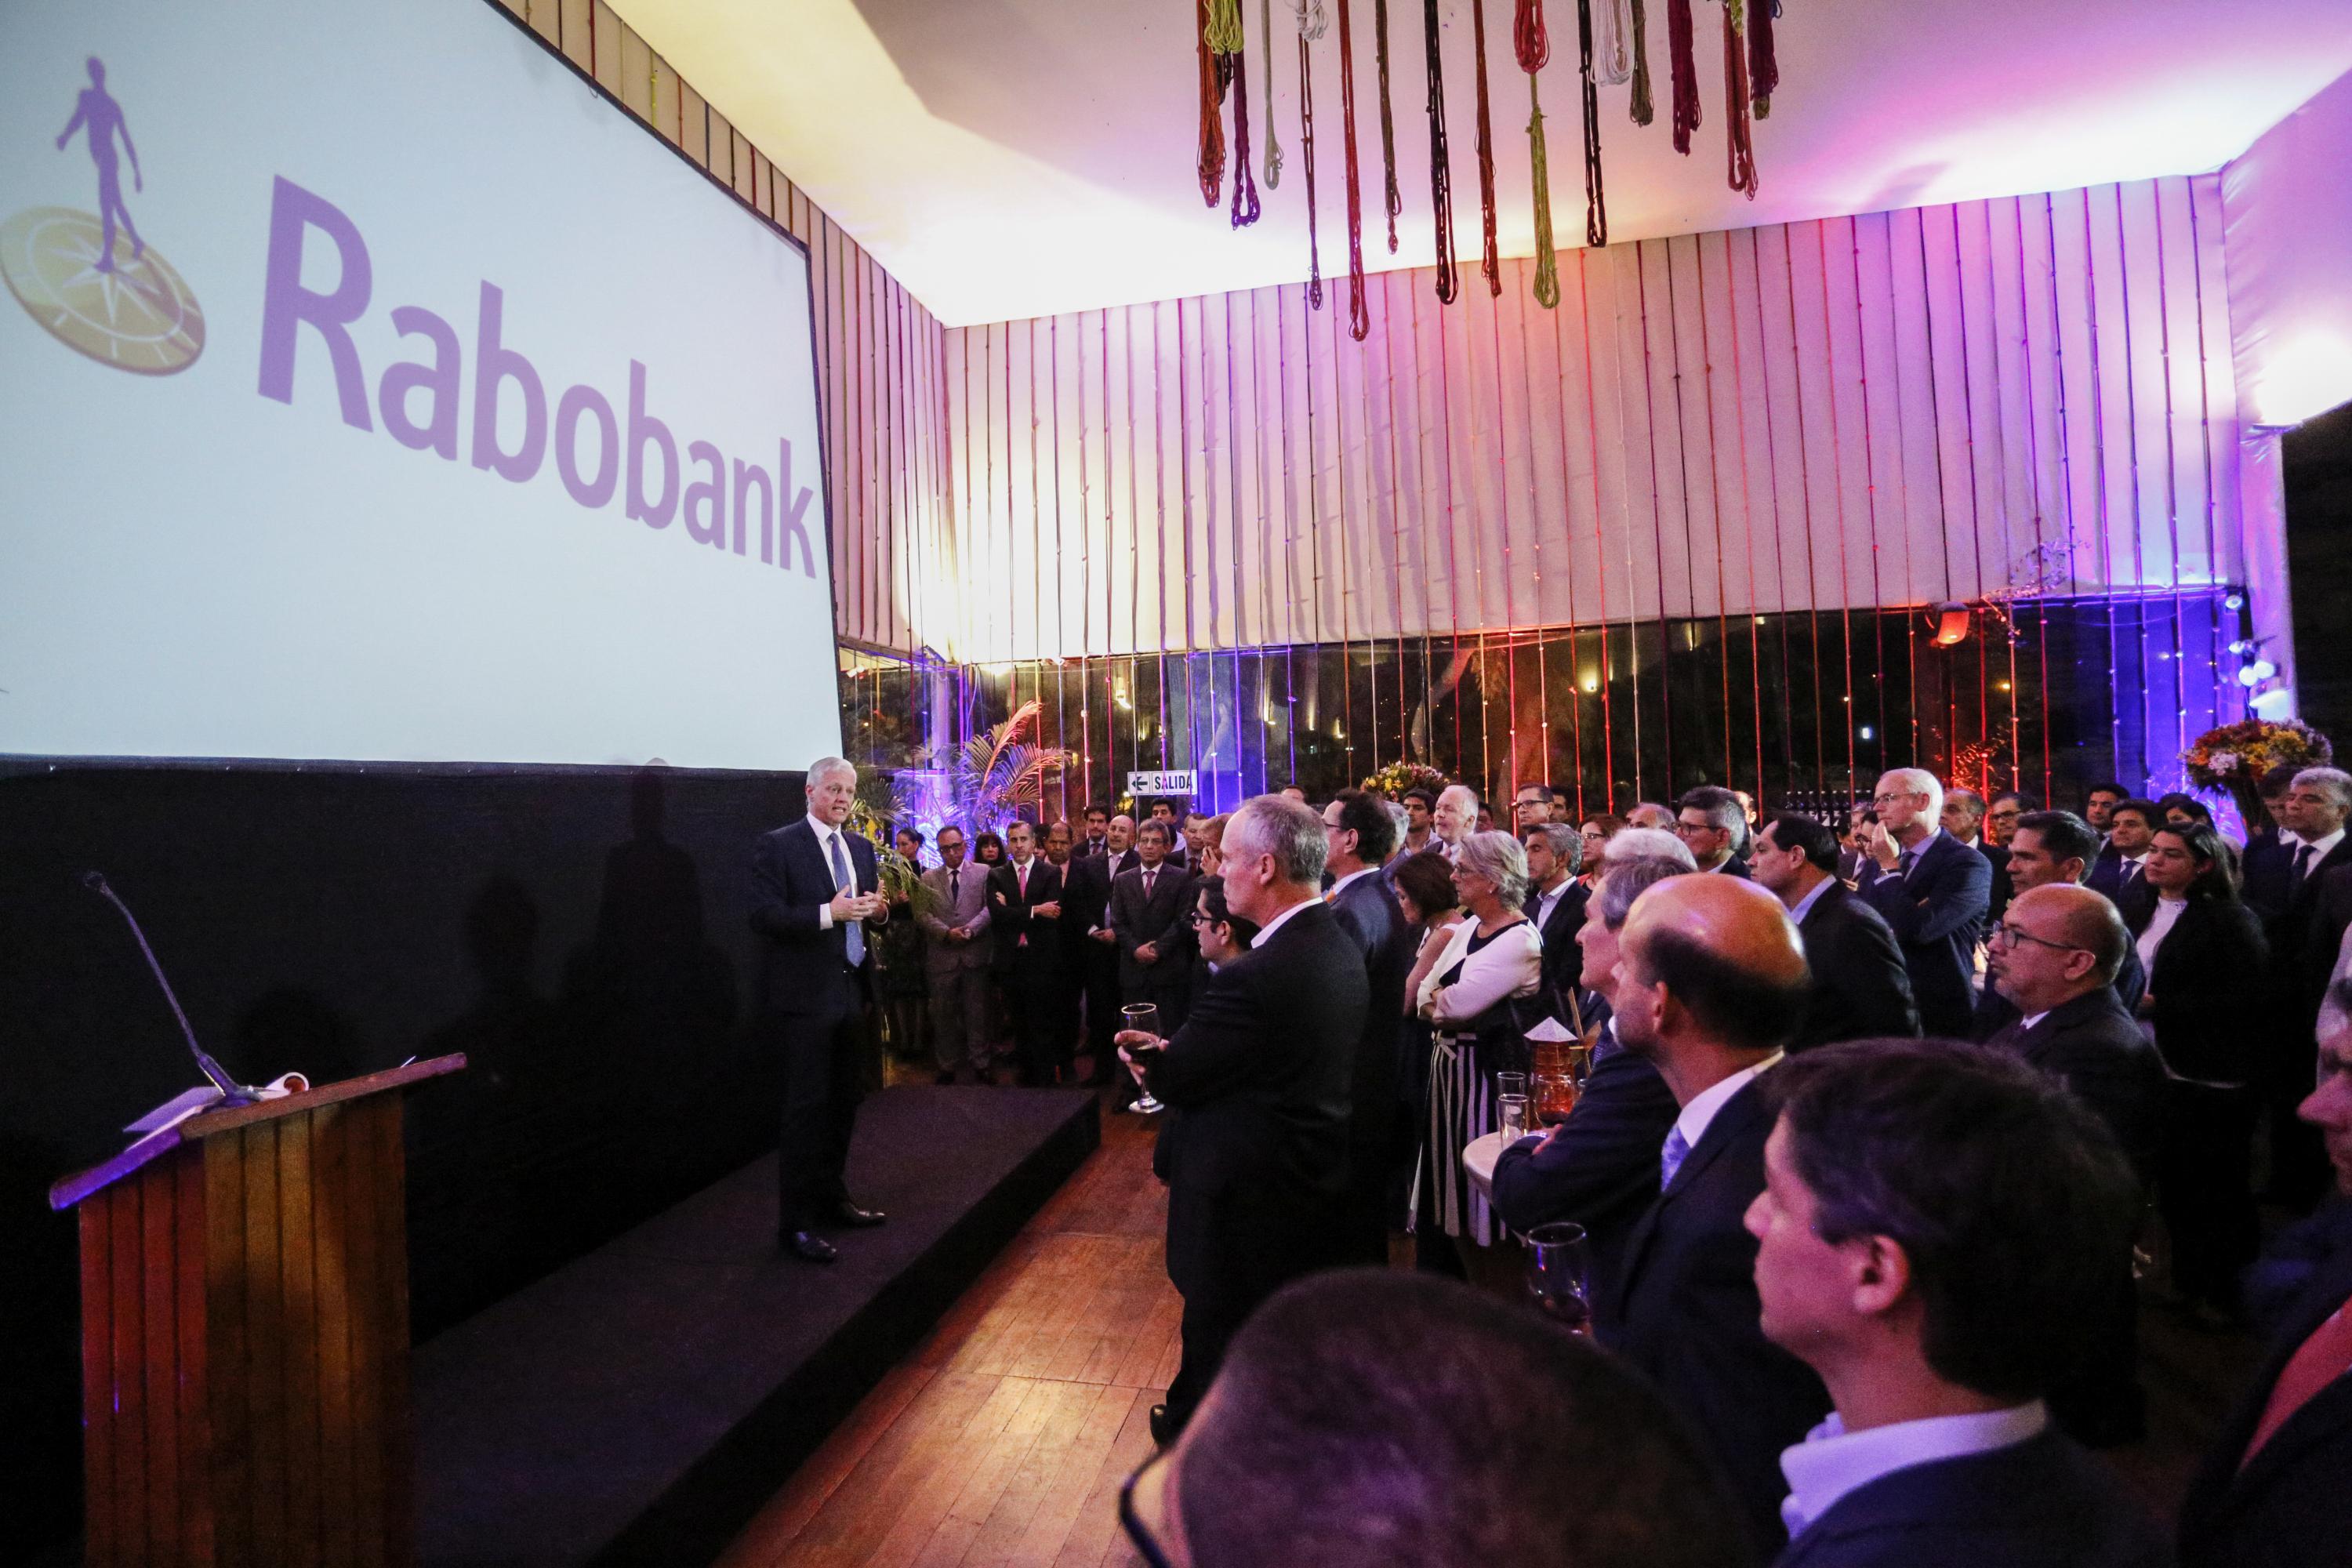 Rabobank, banco holandés con presencia en los cinco continentes, realizó con éxito su presentación oficial para iniciar sus actividades de representación en el mercado peruano, en un exclusivo cóctel en el restaurante de la Huaca Pucllana.